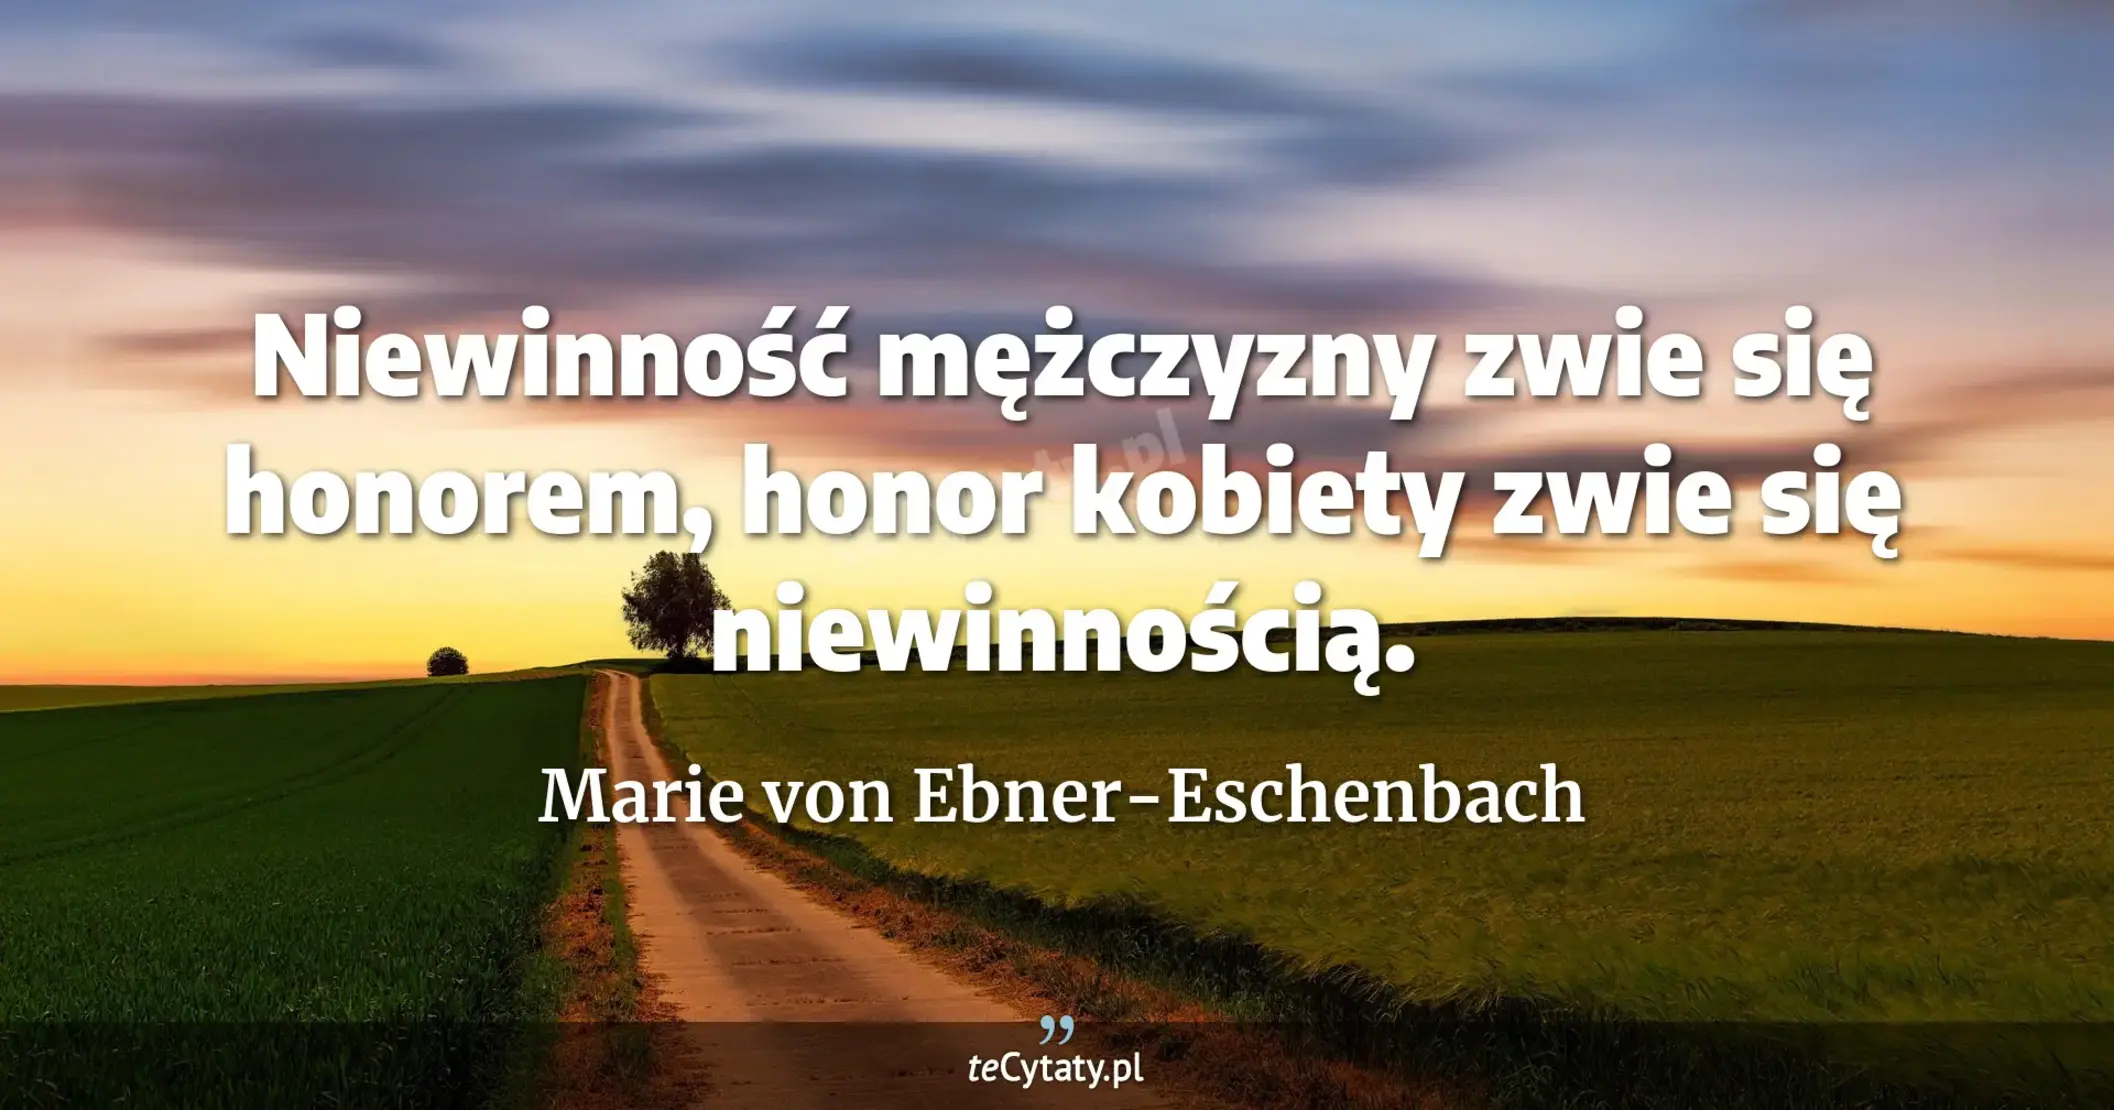 Niewinność mężczyzny zwie się honorem, honor kobiety zwie się niewinnością. - Marie von Ebner-Eschenbach